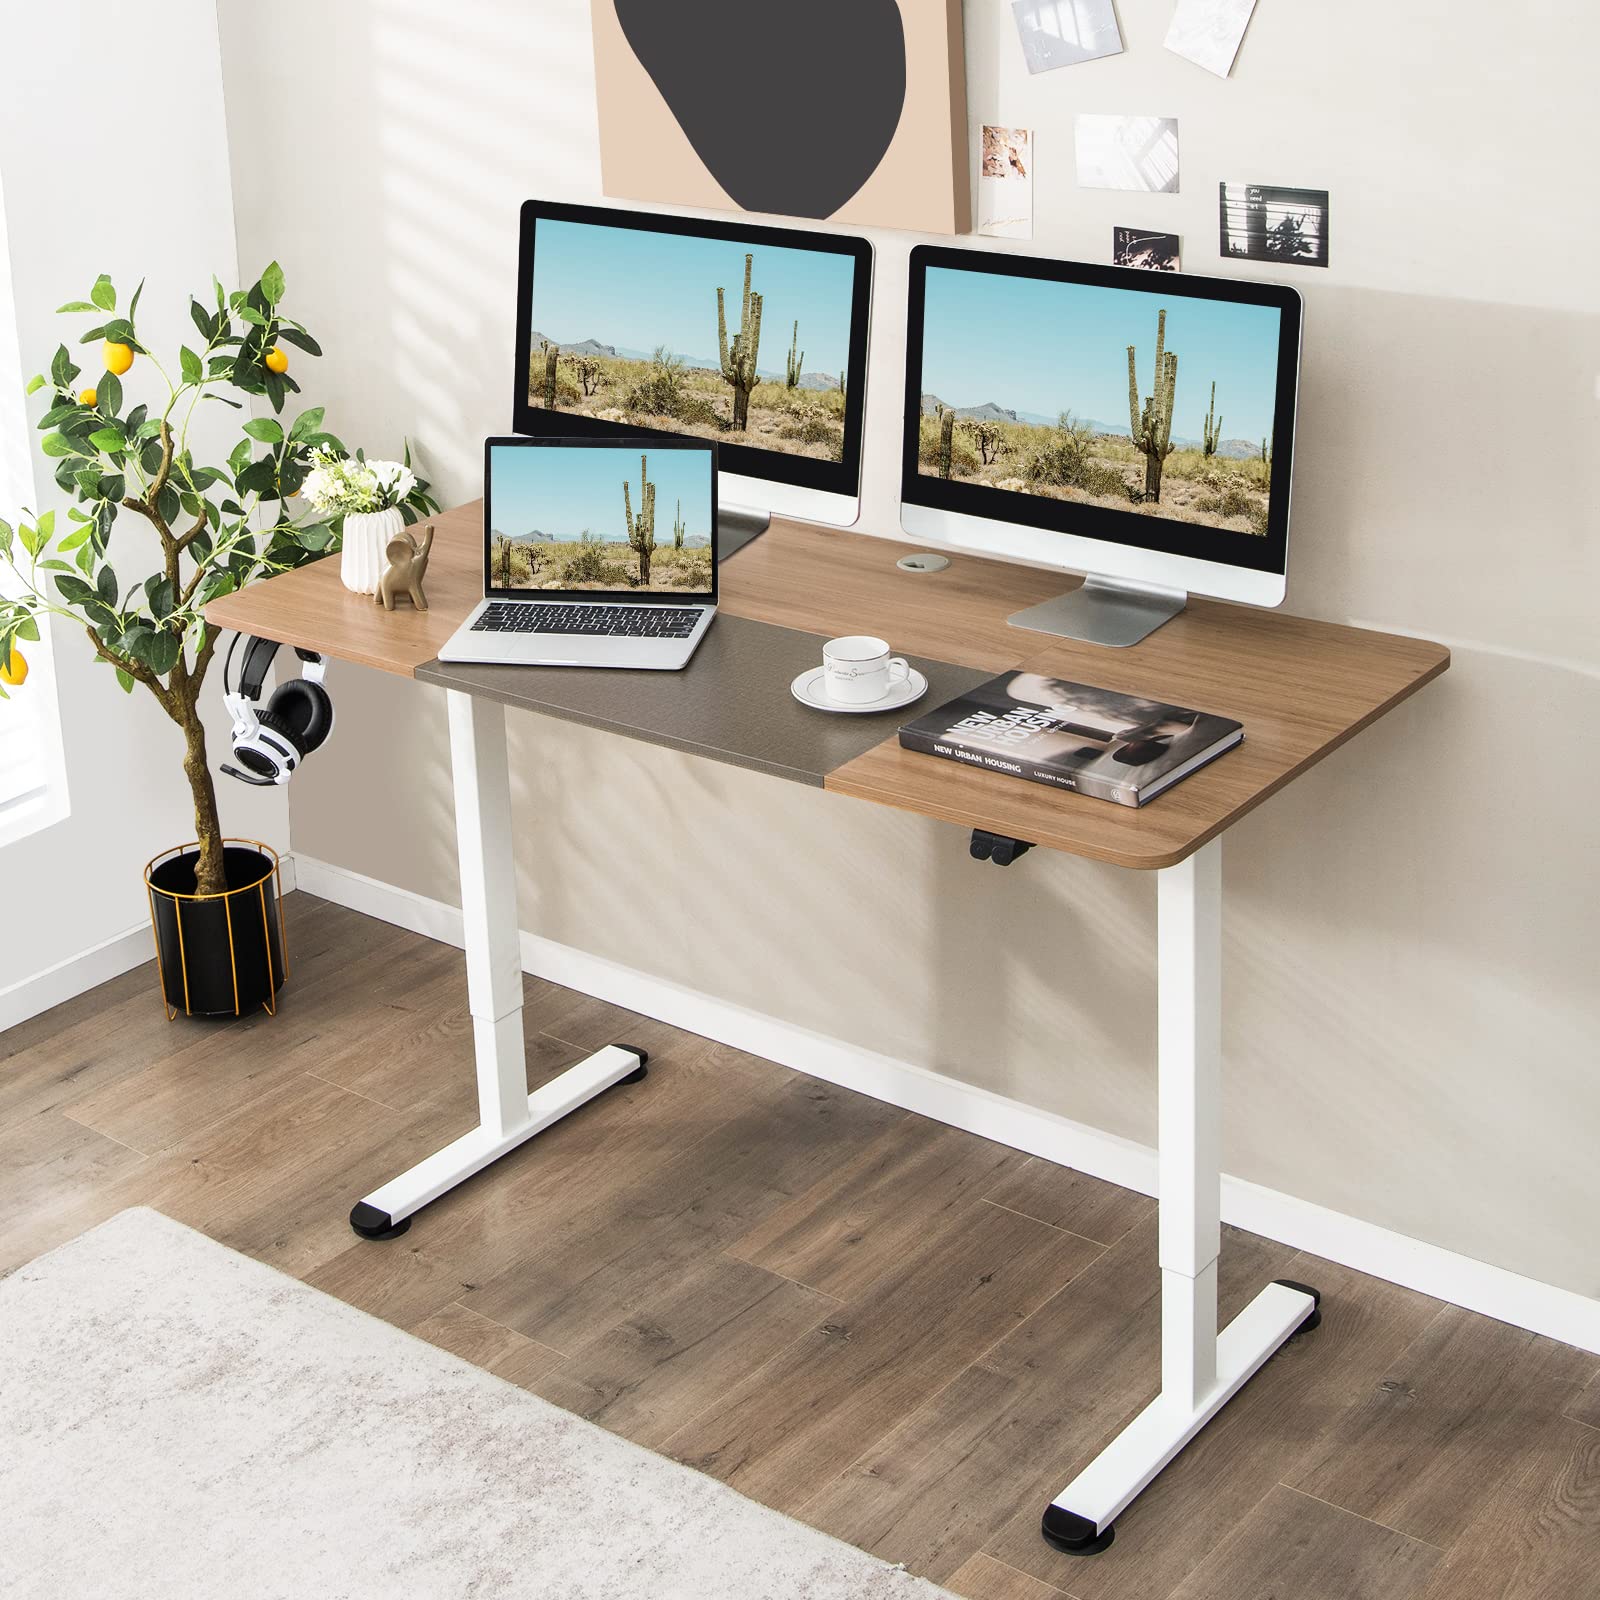 Giantex Electric Height Adjustable Standing Desk